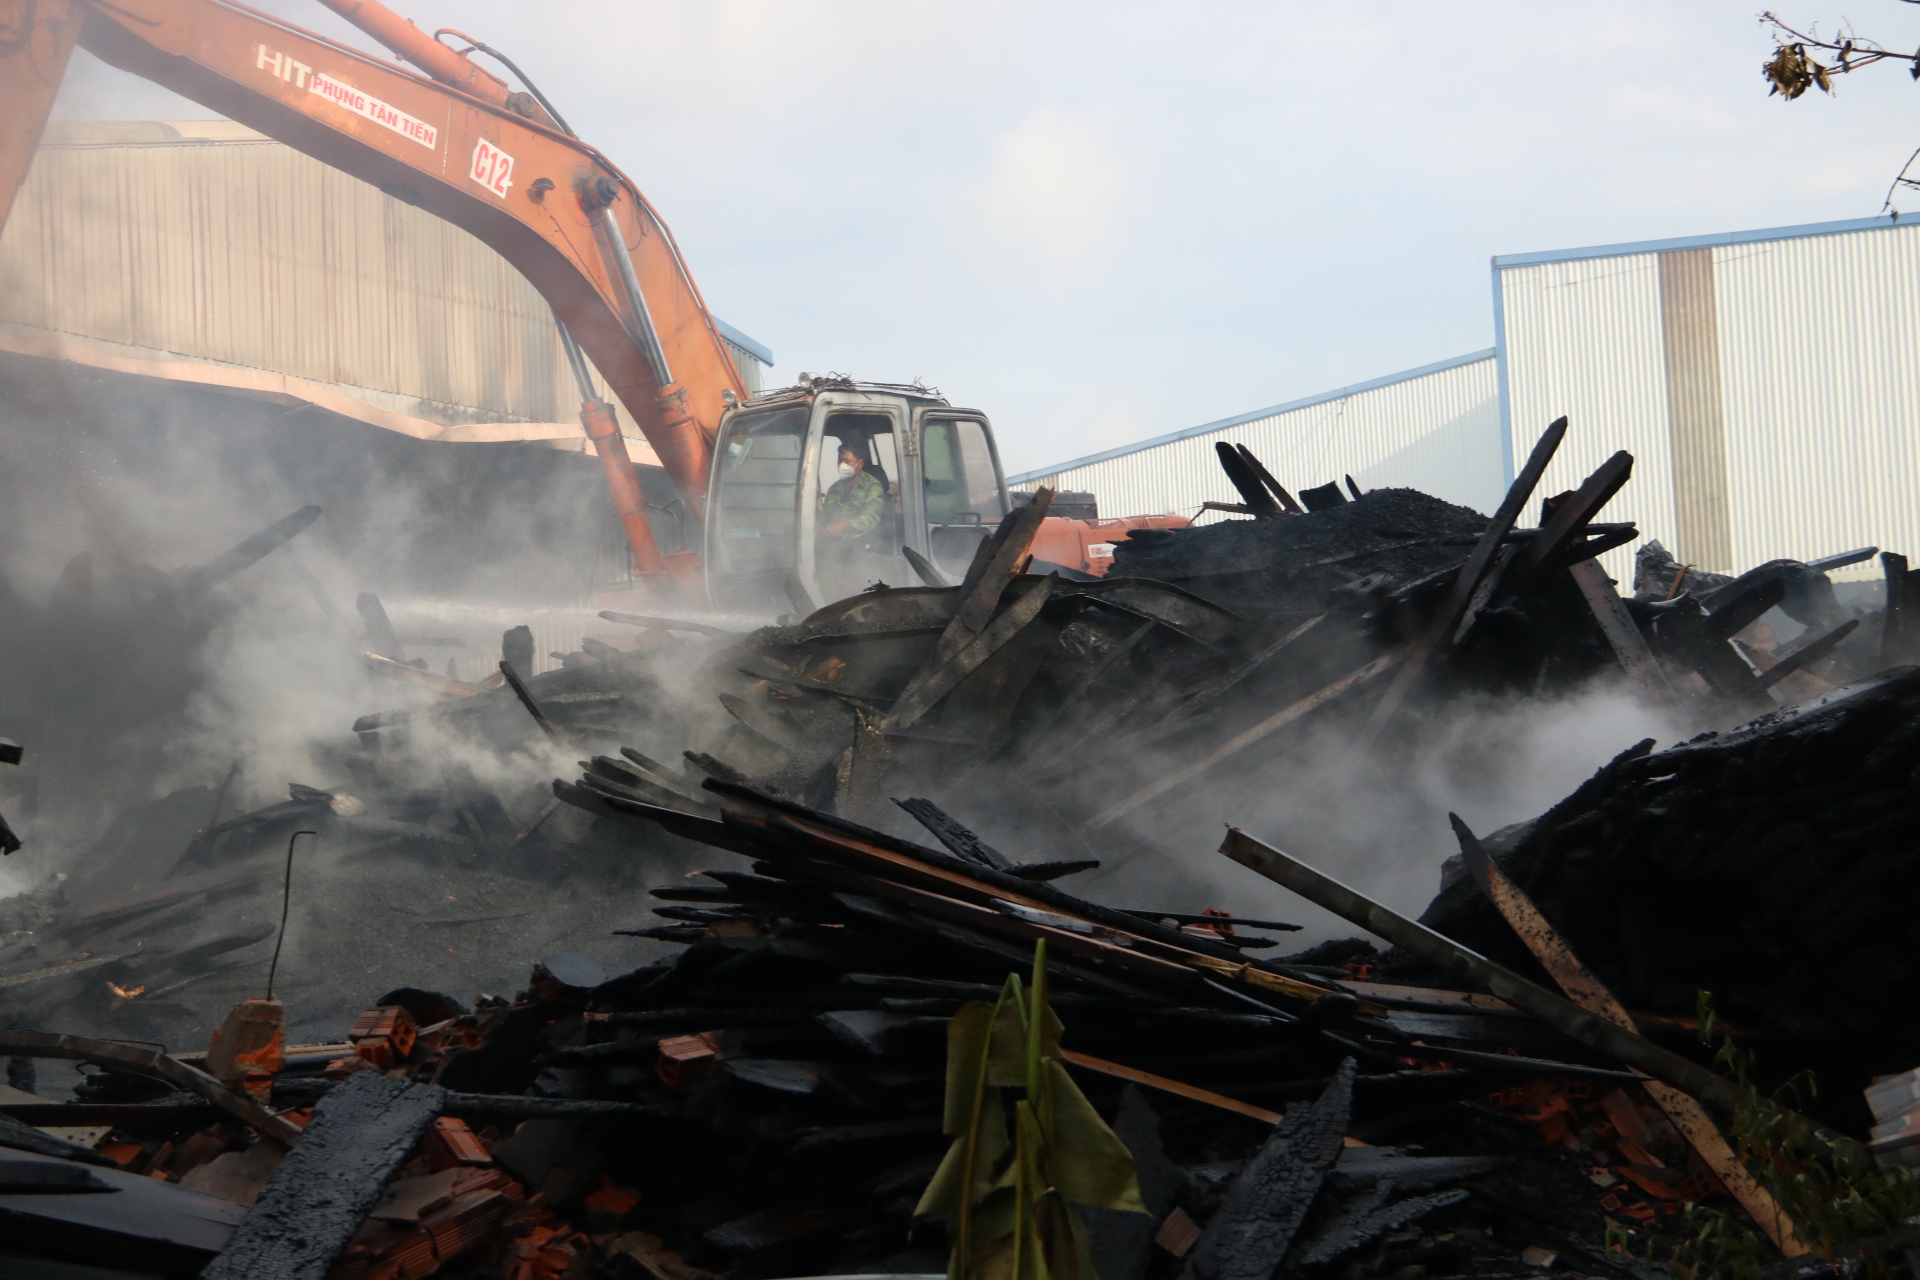 Cơ sở sản xuất đồ gỗ bị thiệt hại nặng, nhiều khối gỗ chất đống còn cháy âm ỉ. Lực lượng chức năng phải điều xe múc vào đào xới lên để đưa nước dập tặt hoàn toàn đám cháy.